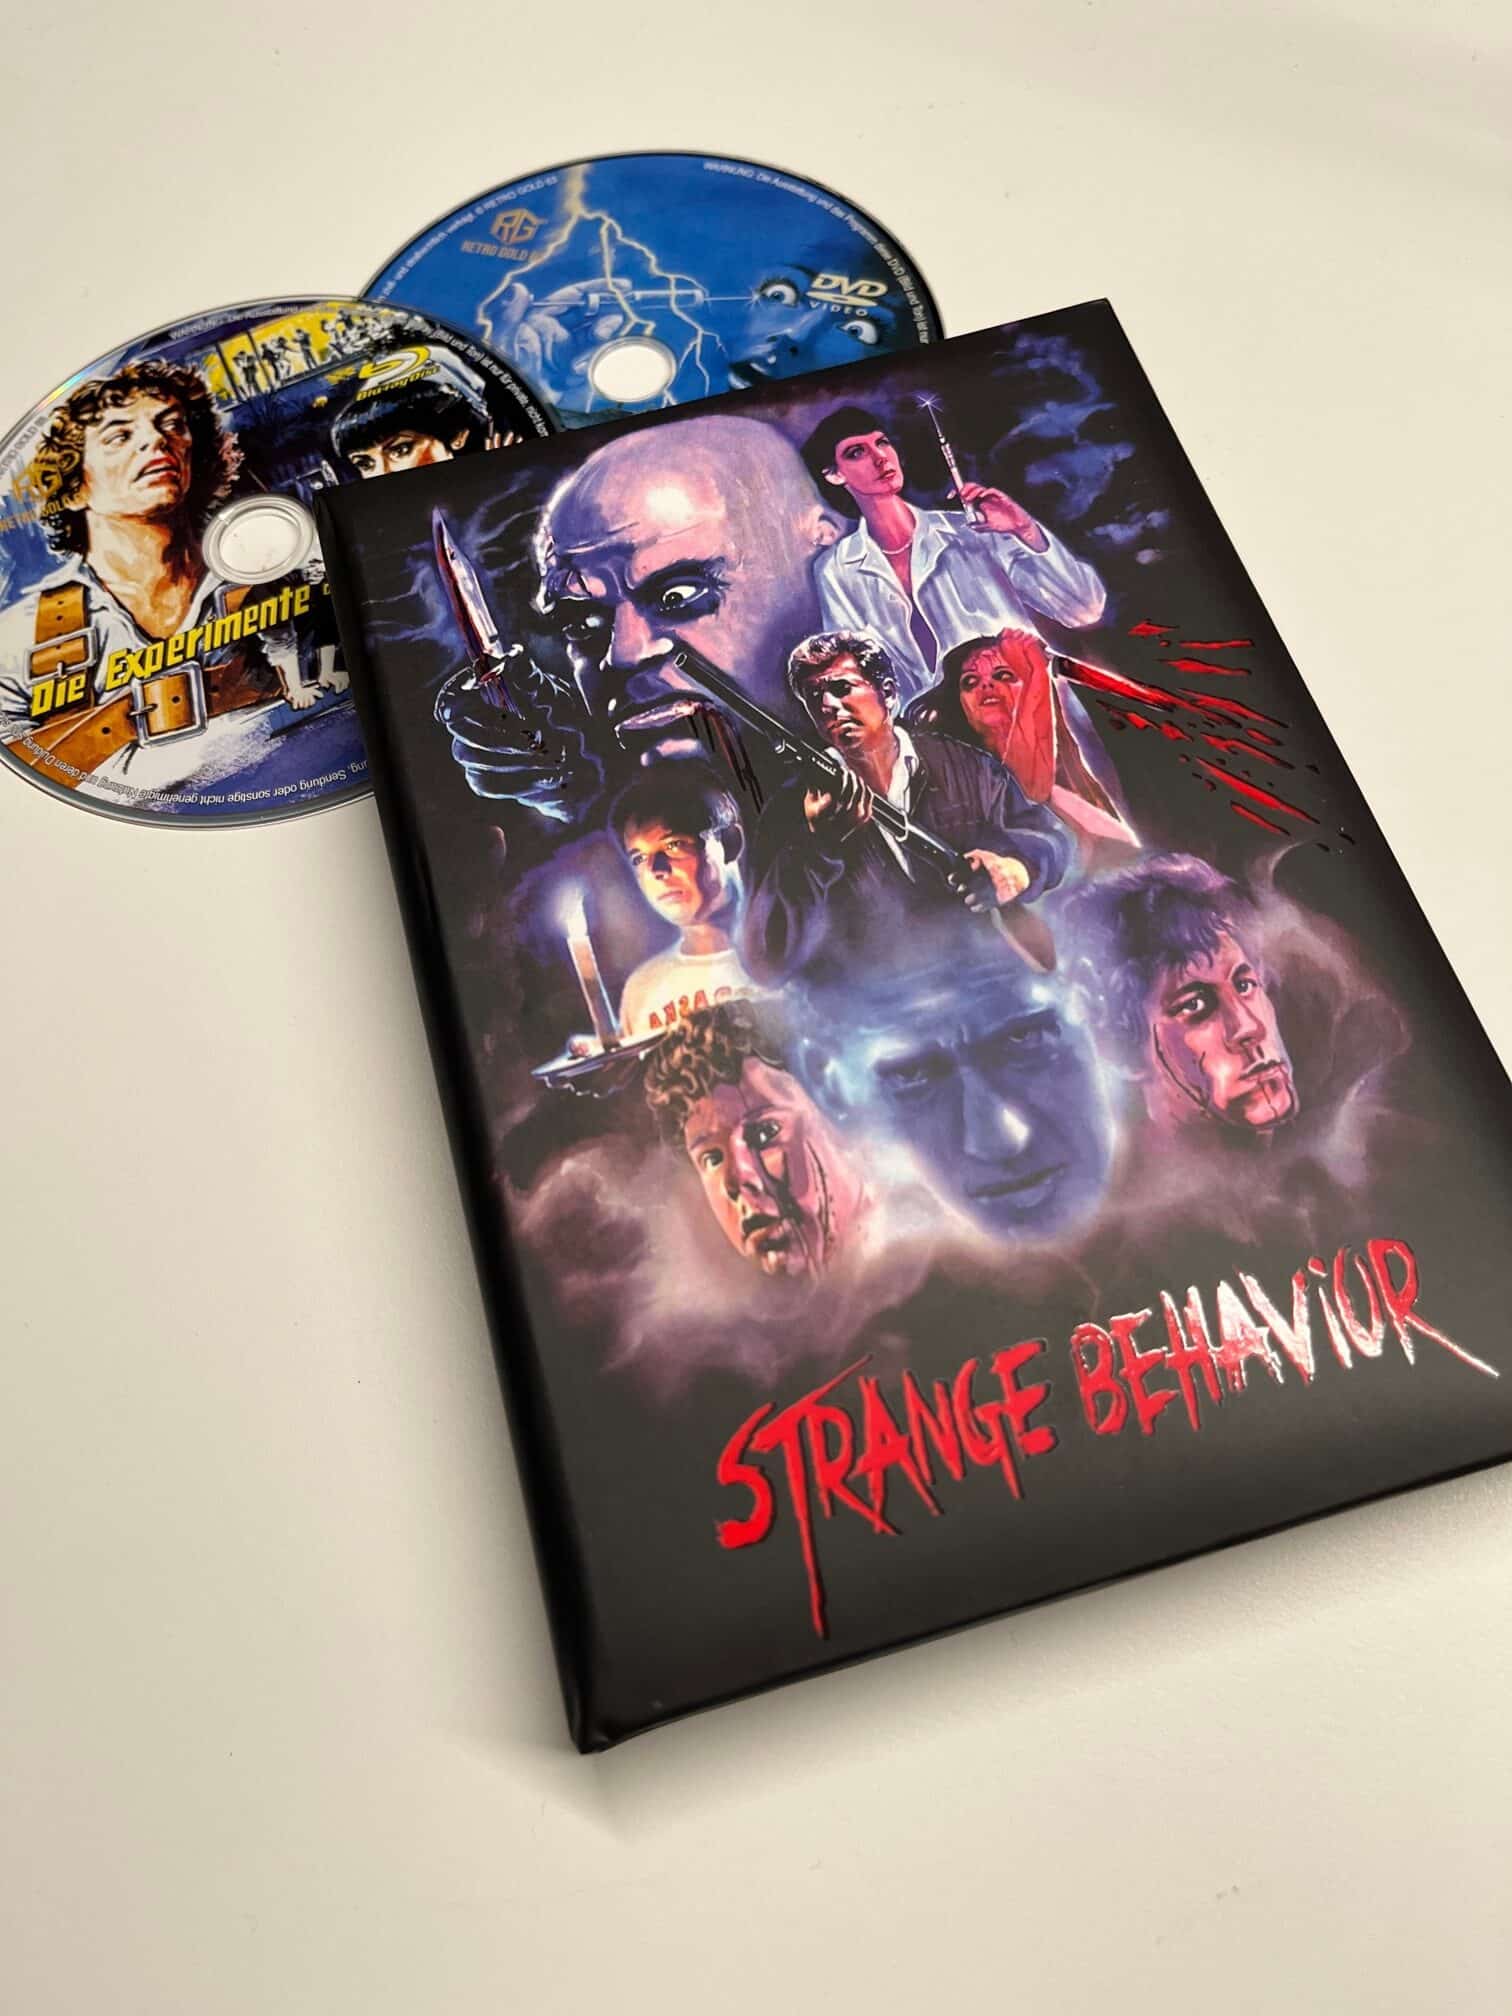 [Review] Strange Behaviour (1981) im Blu-ray-Mediabook (inkl. DVD)